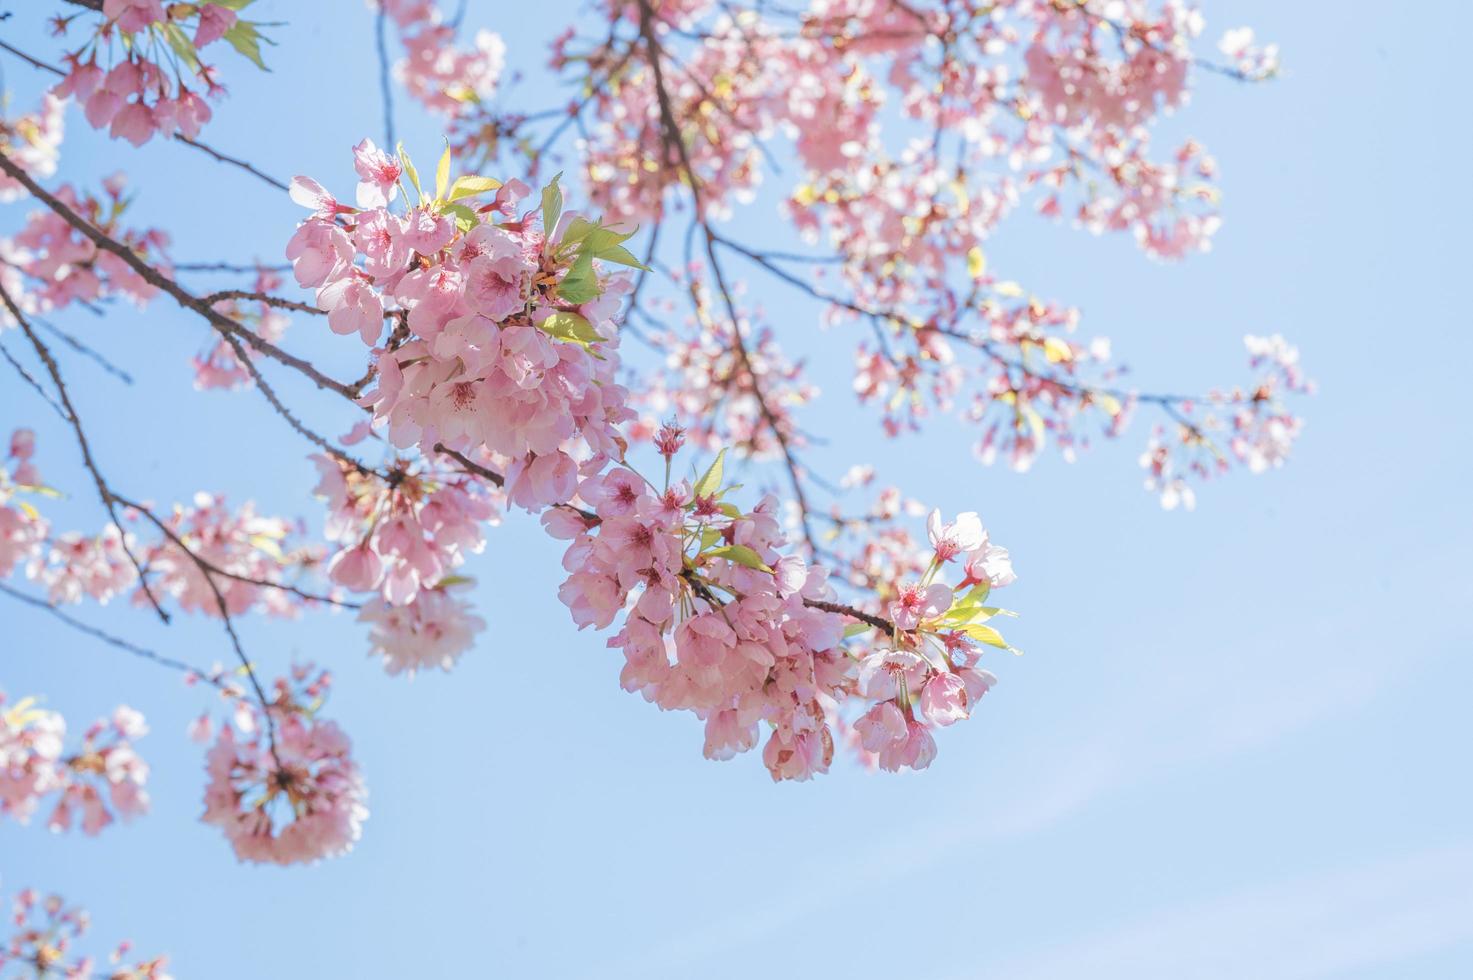 retrato de ramos de cerejeira com flores em um céu claro foto